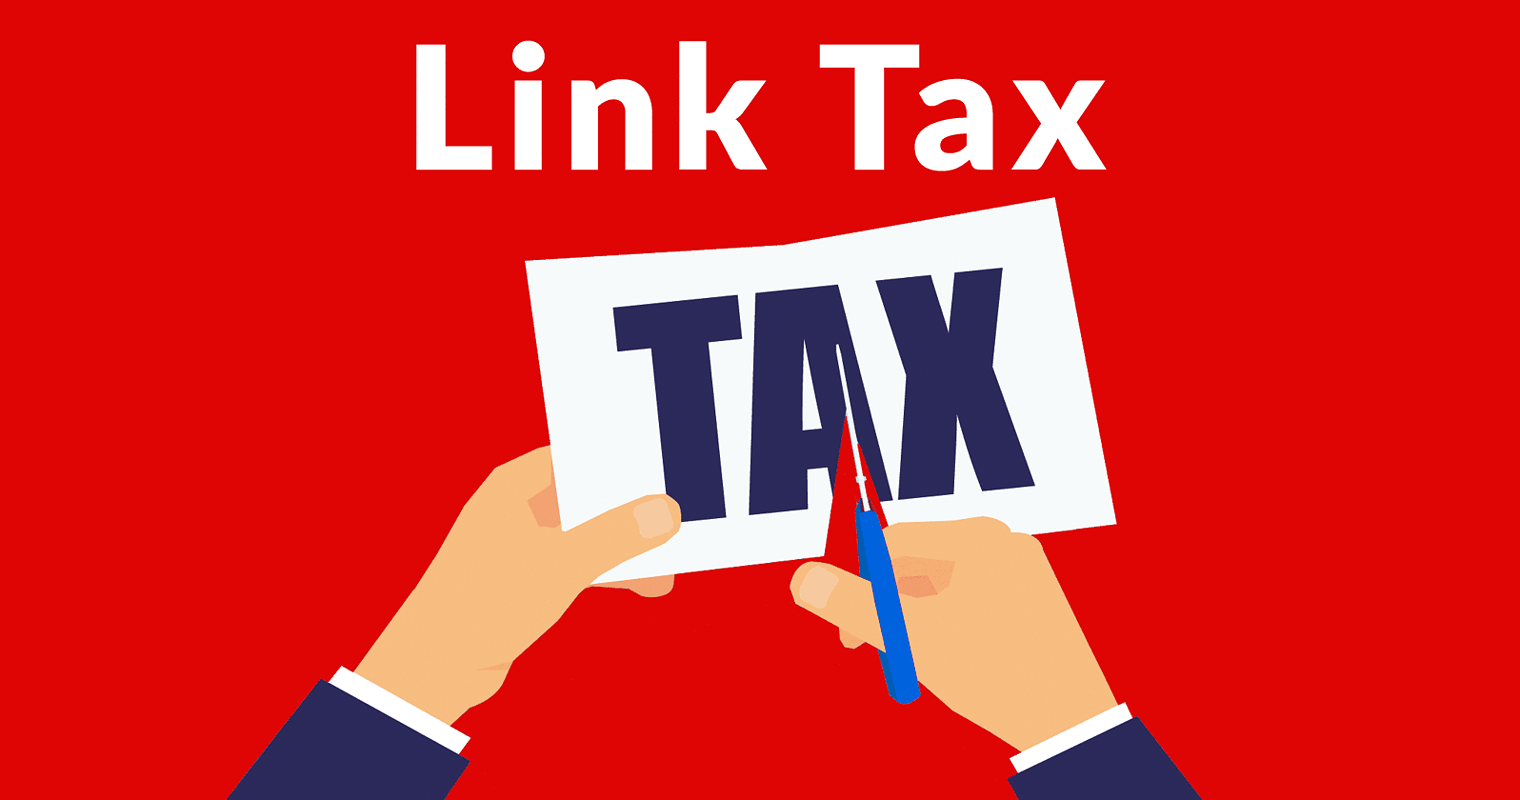 EU Link Tax Suffers Stunning Setback